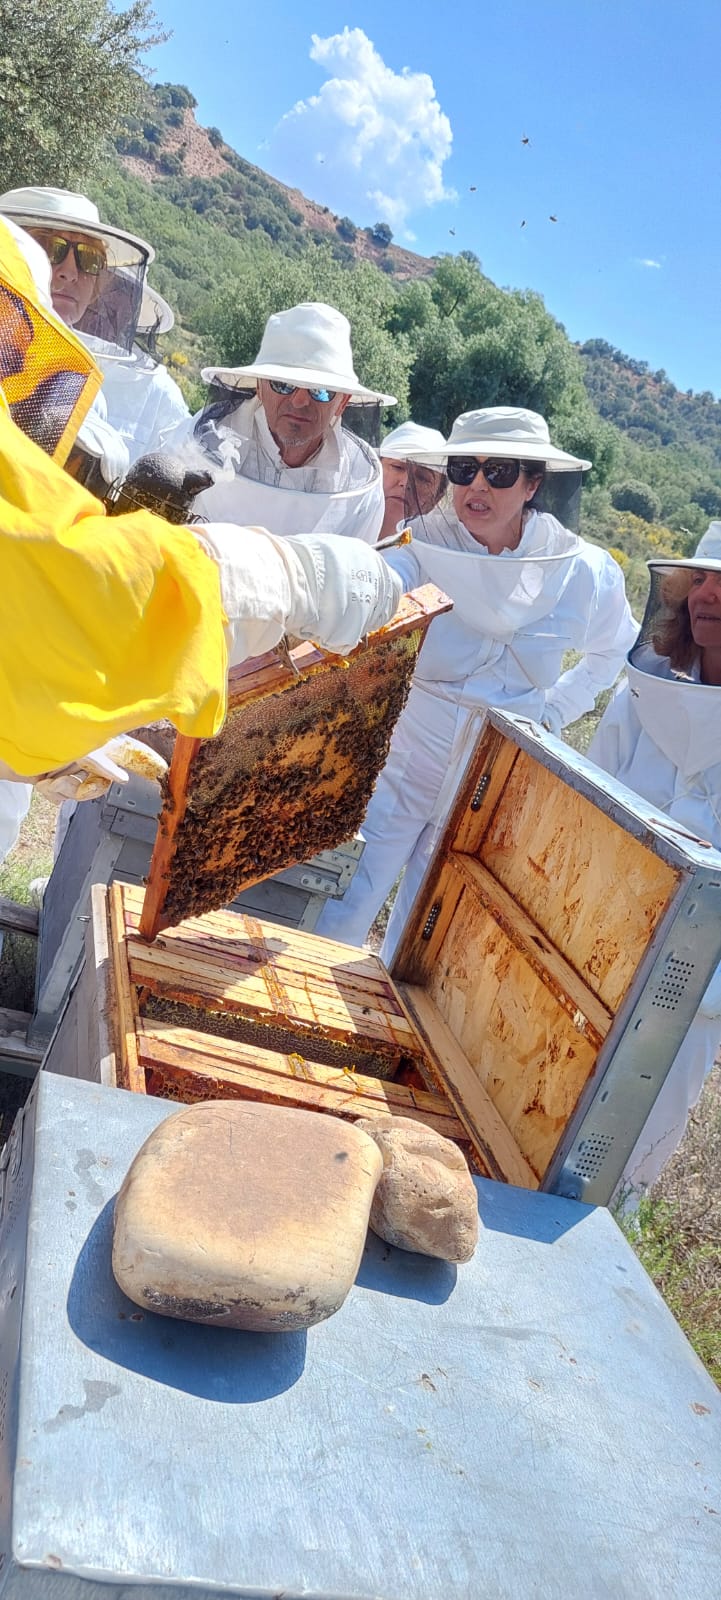 Producción de cera y panales de abejas - Ocio educativo en la naturaleza